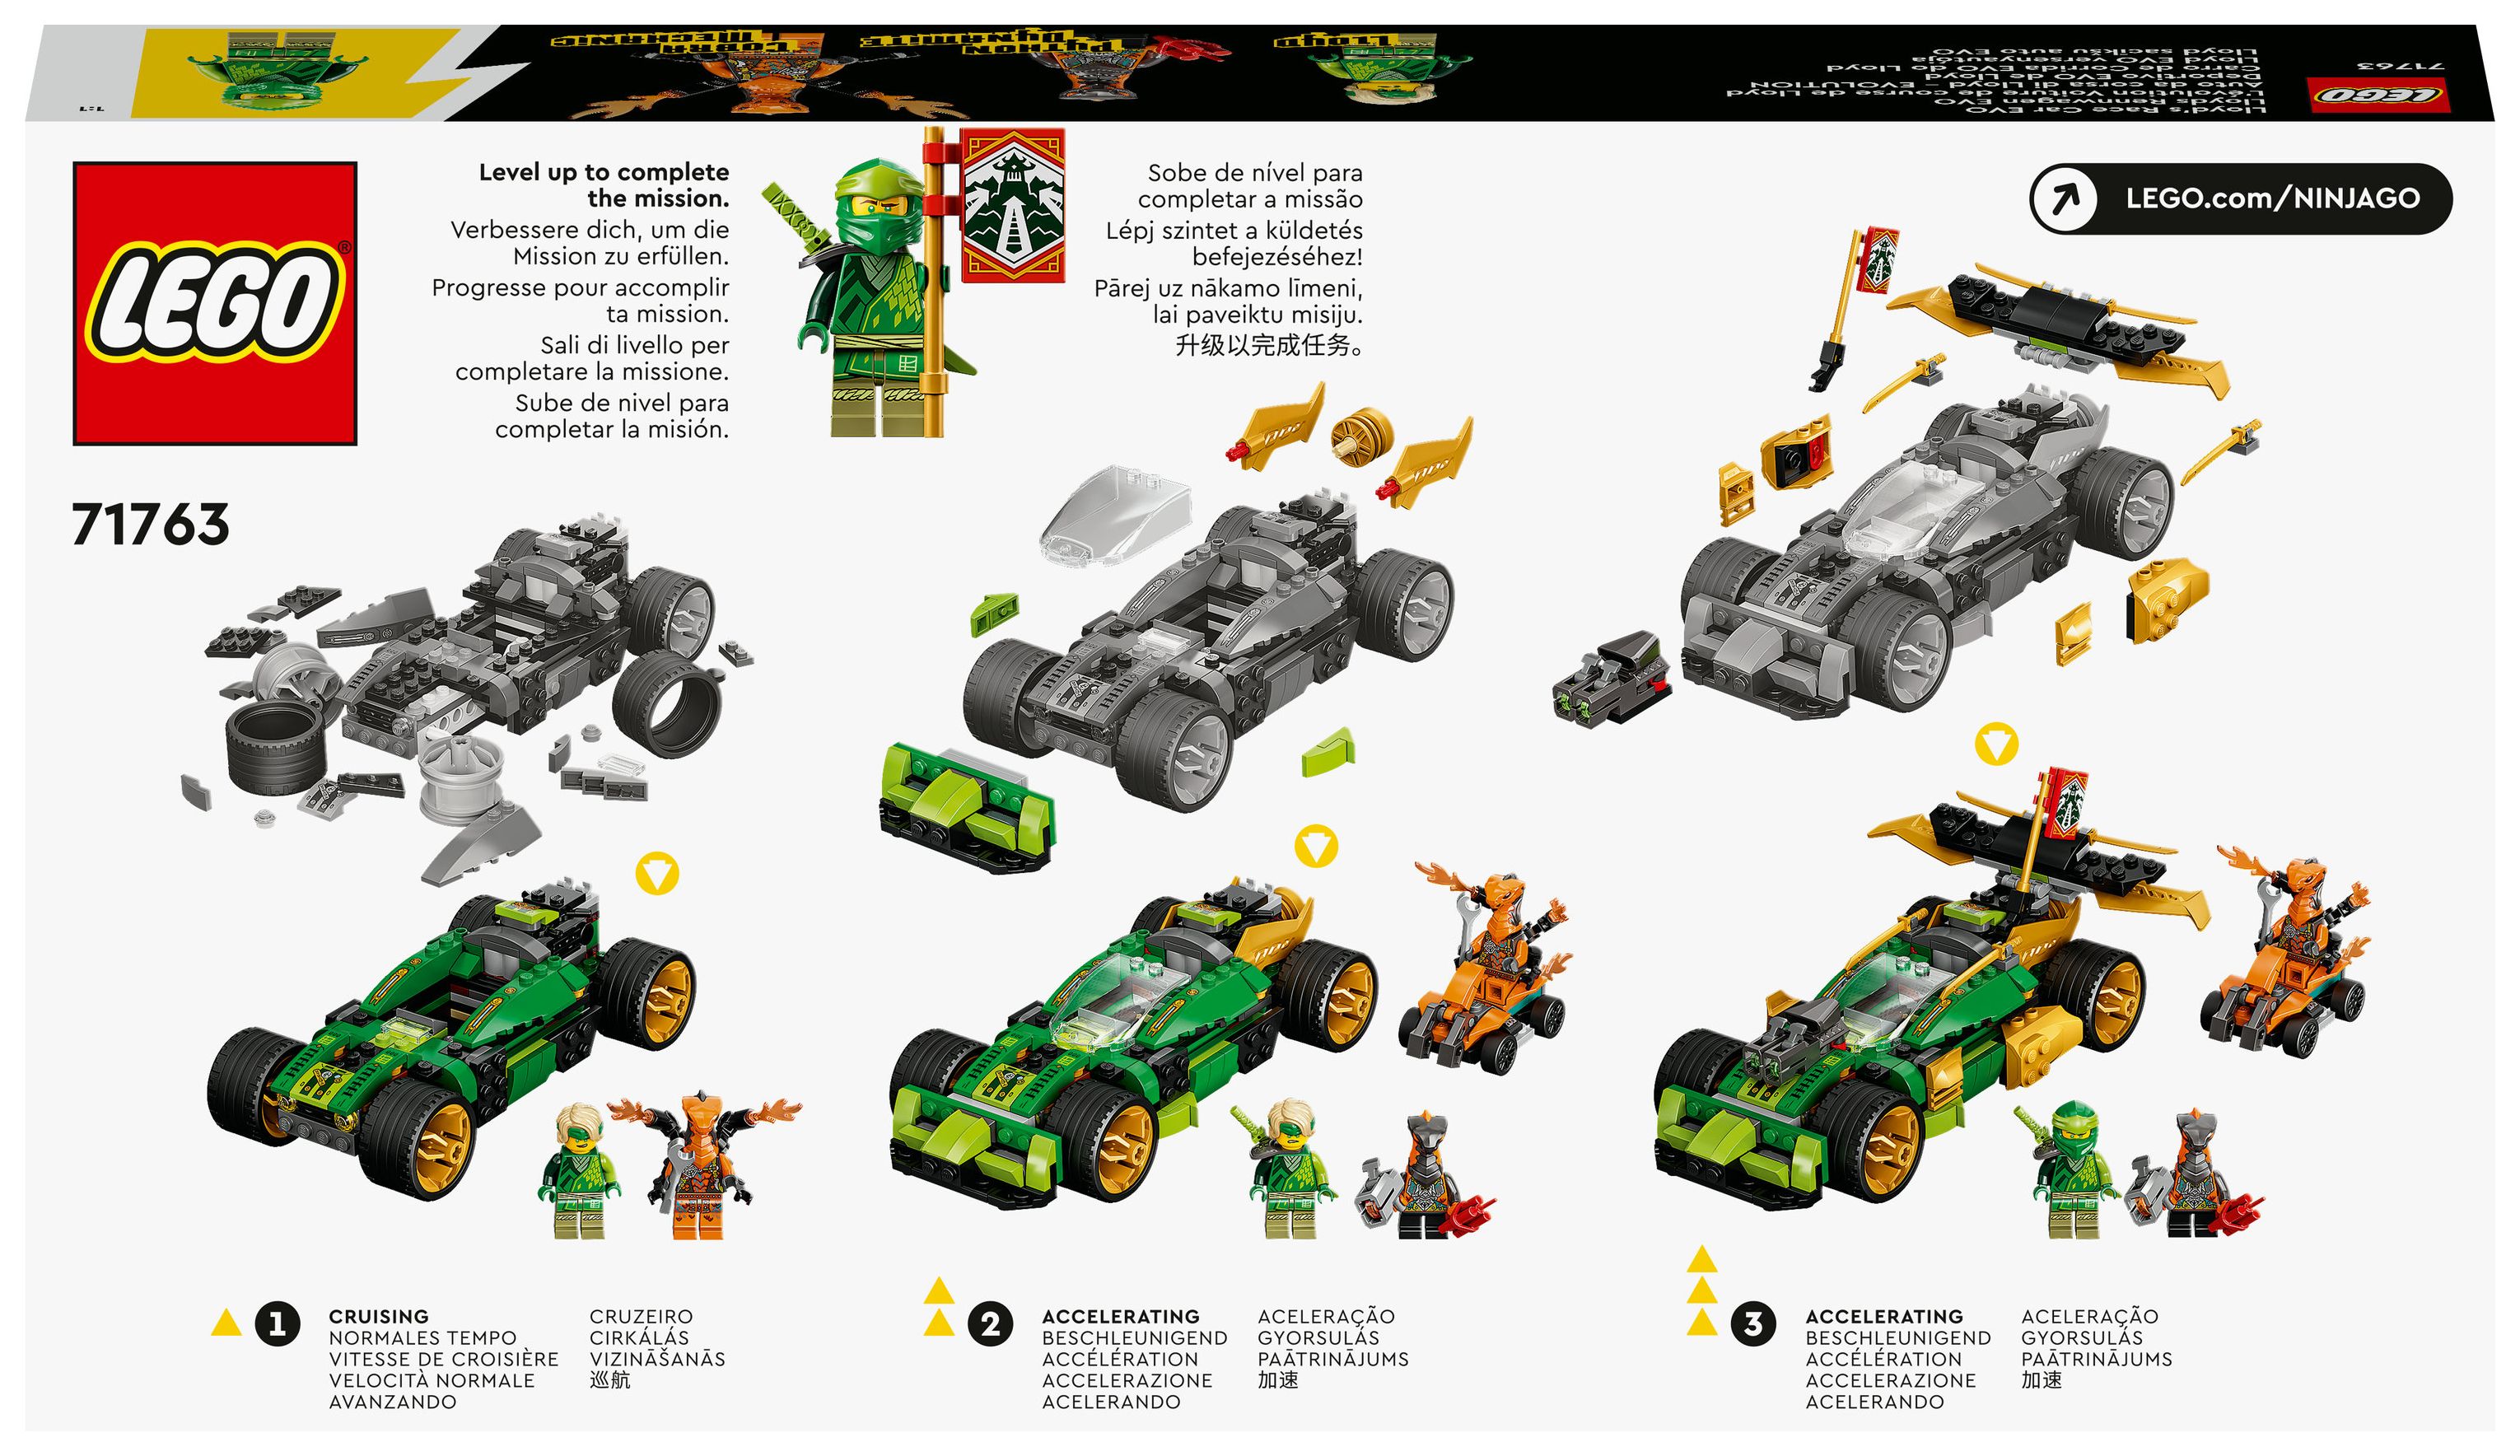 LEGO Lloyds Rennwagen EVO von expert Technomarkt